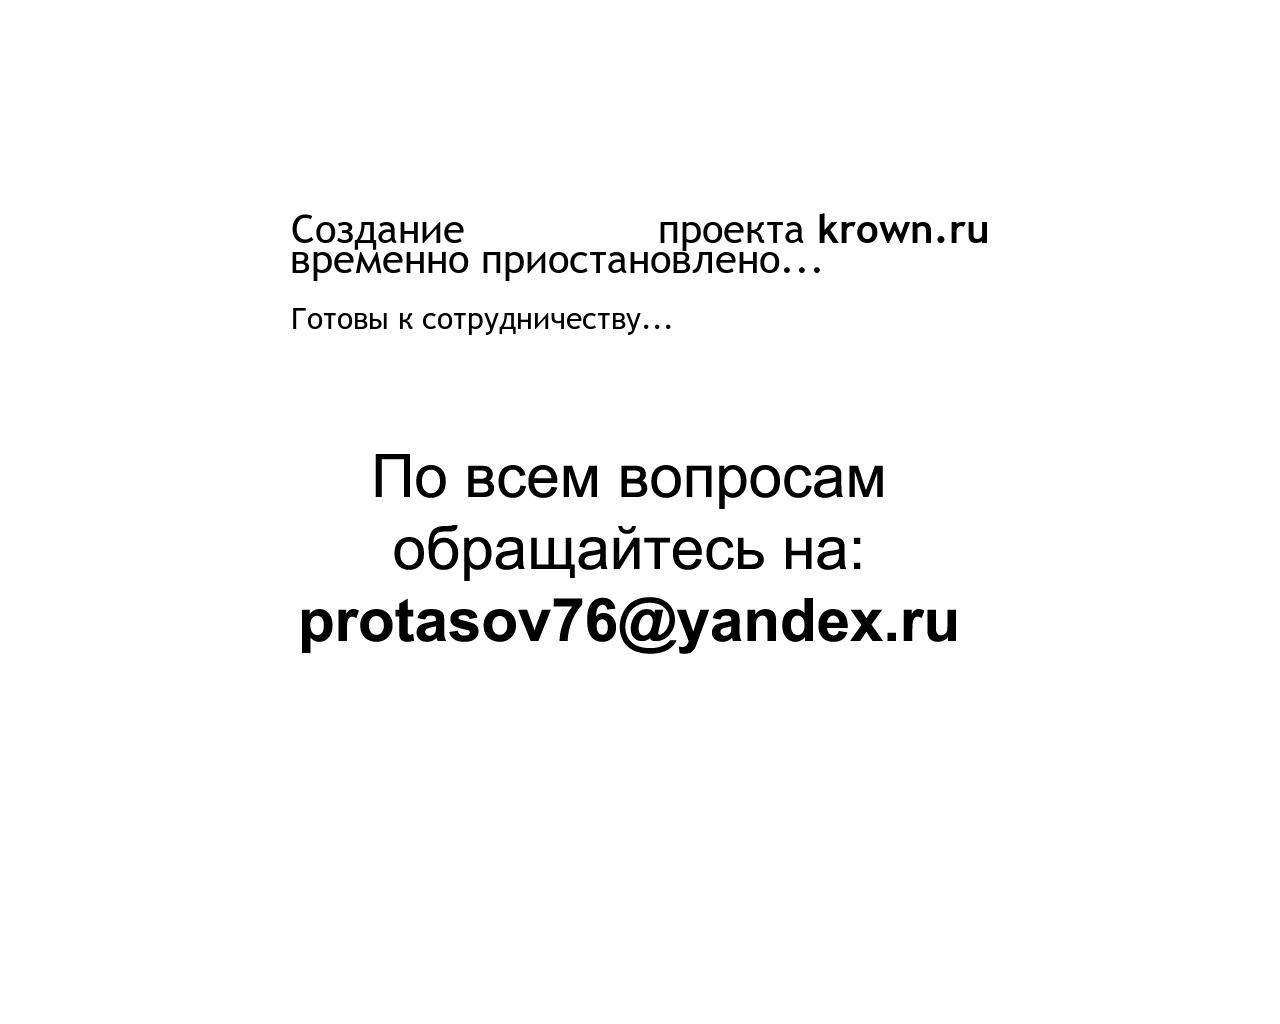 Изображение сайта krown.ru в разрешении 1280x1024